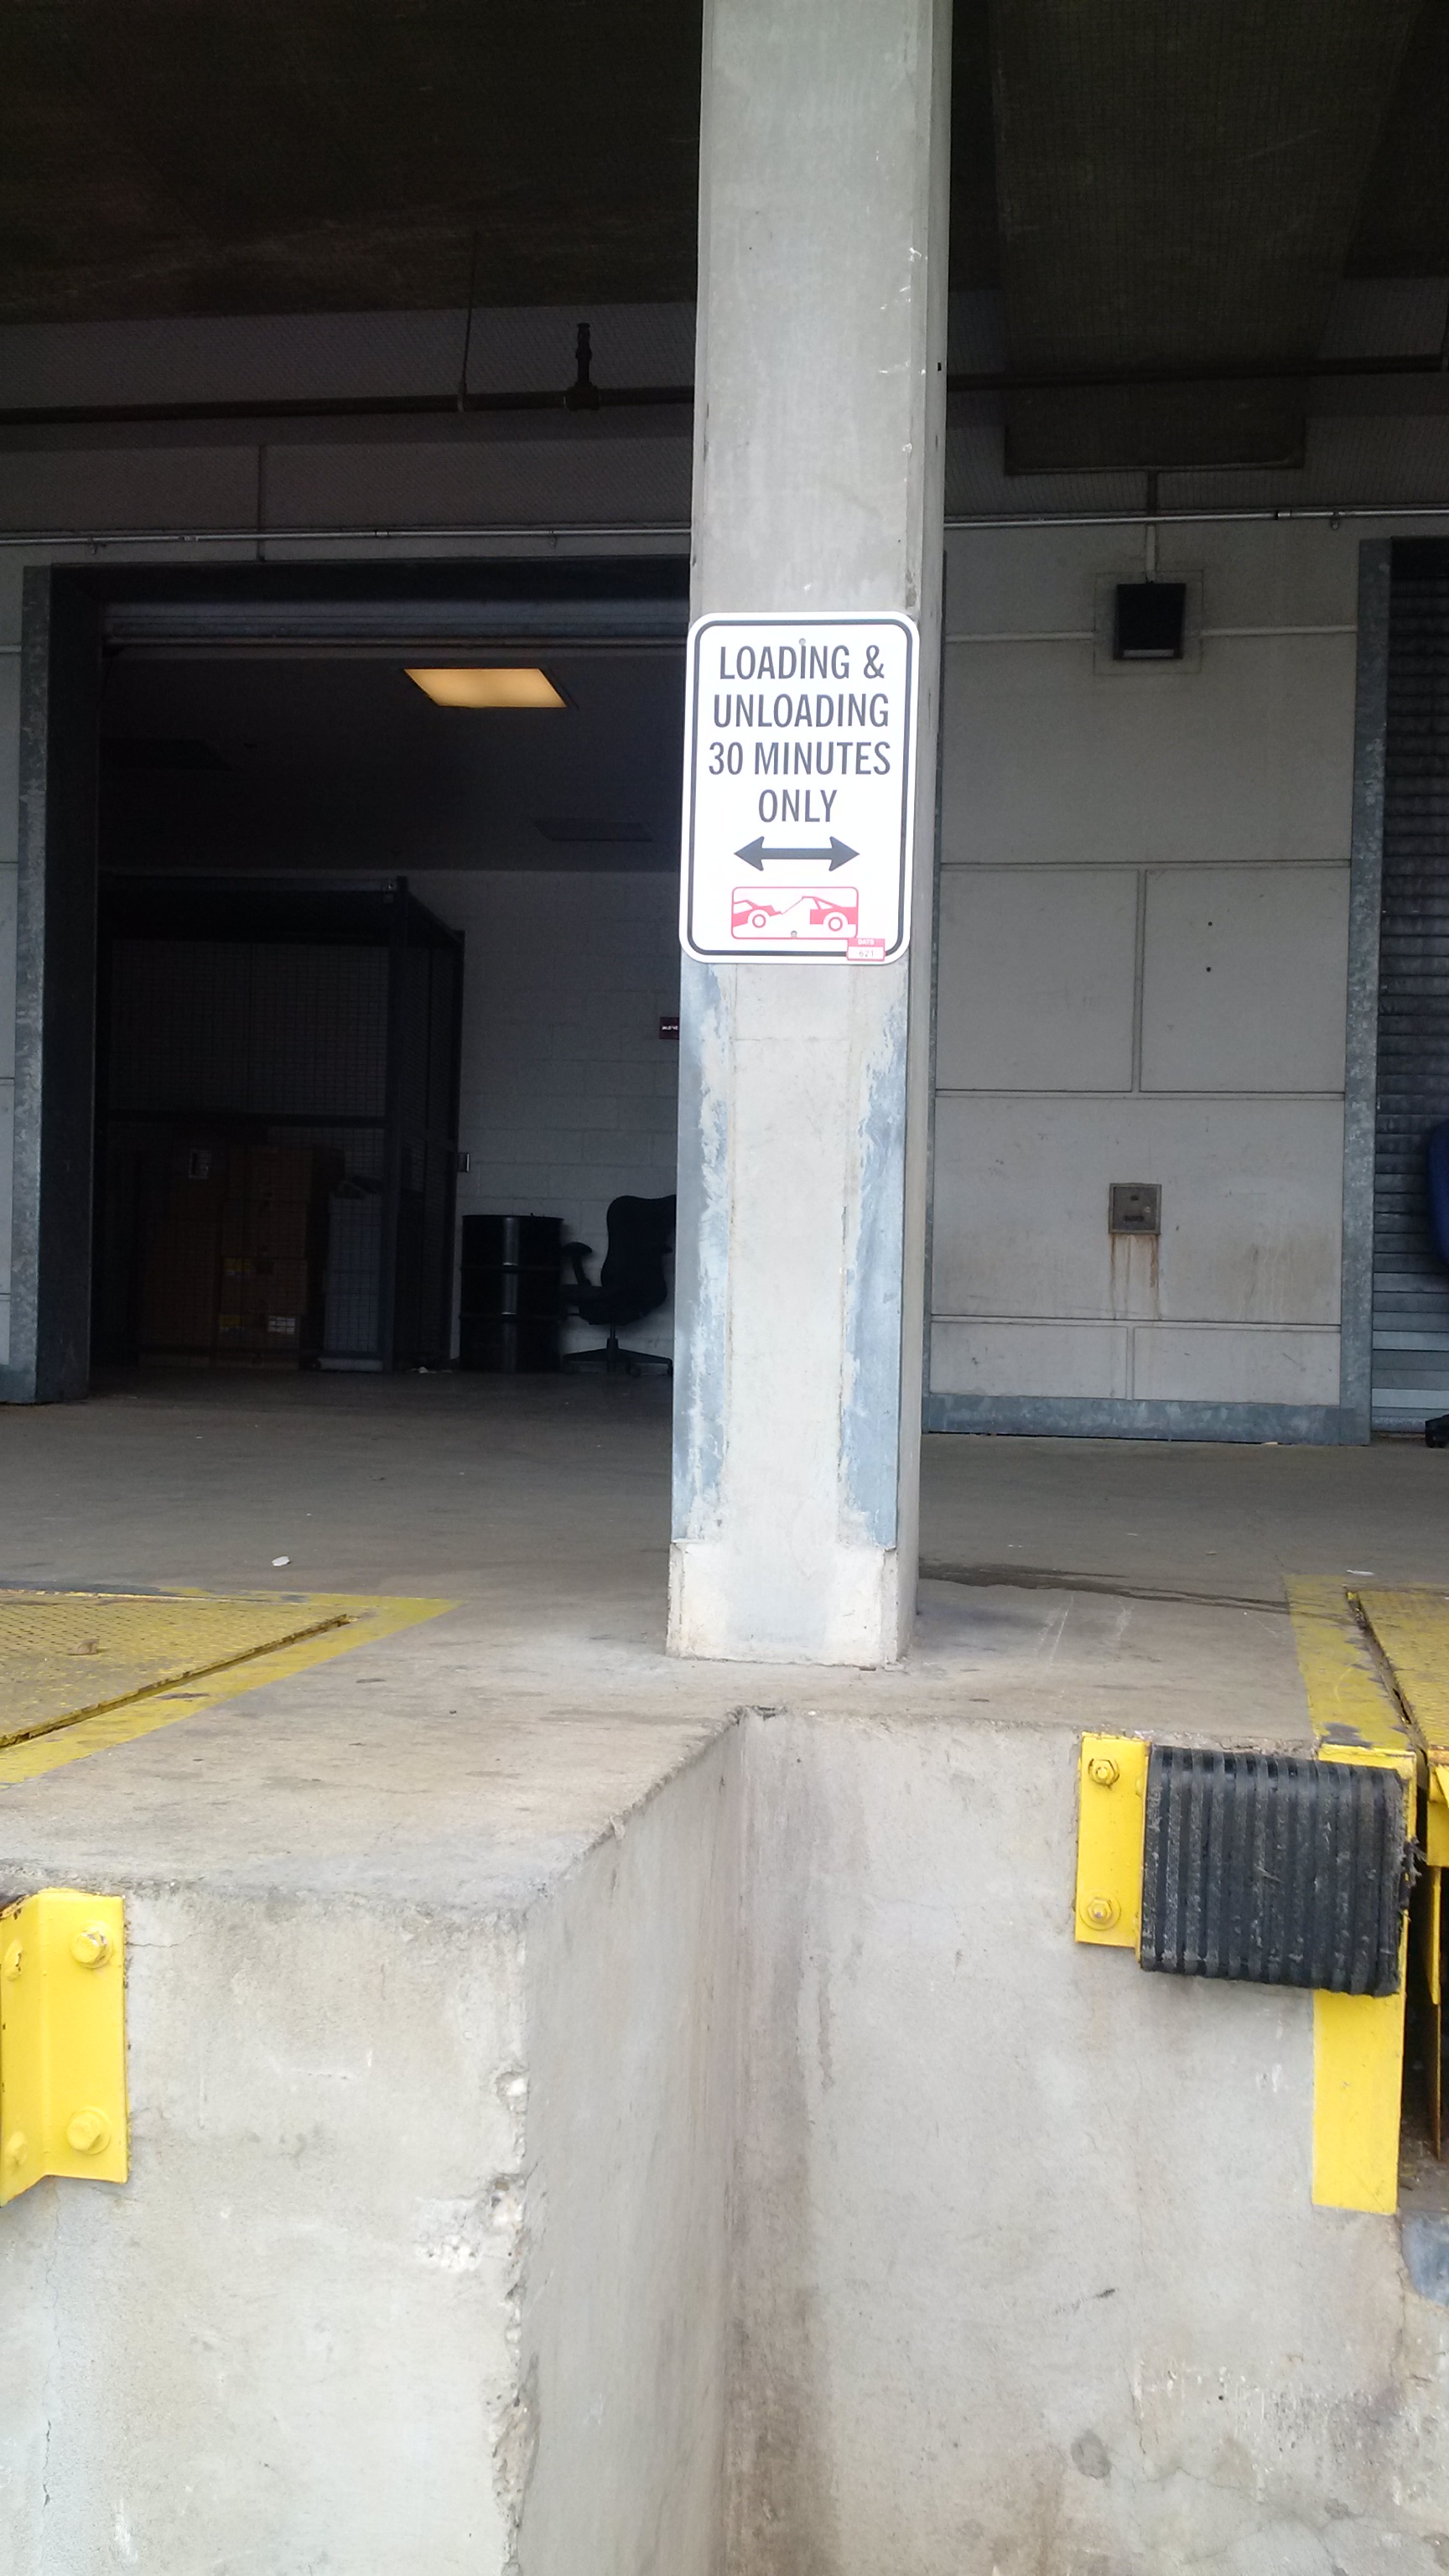 Image of Loading Dock Parking Sign